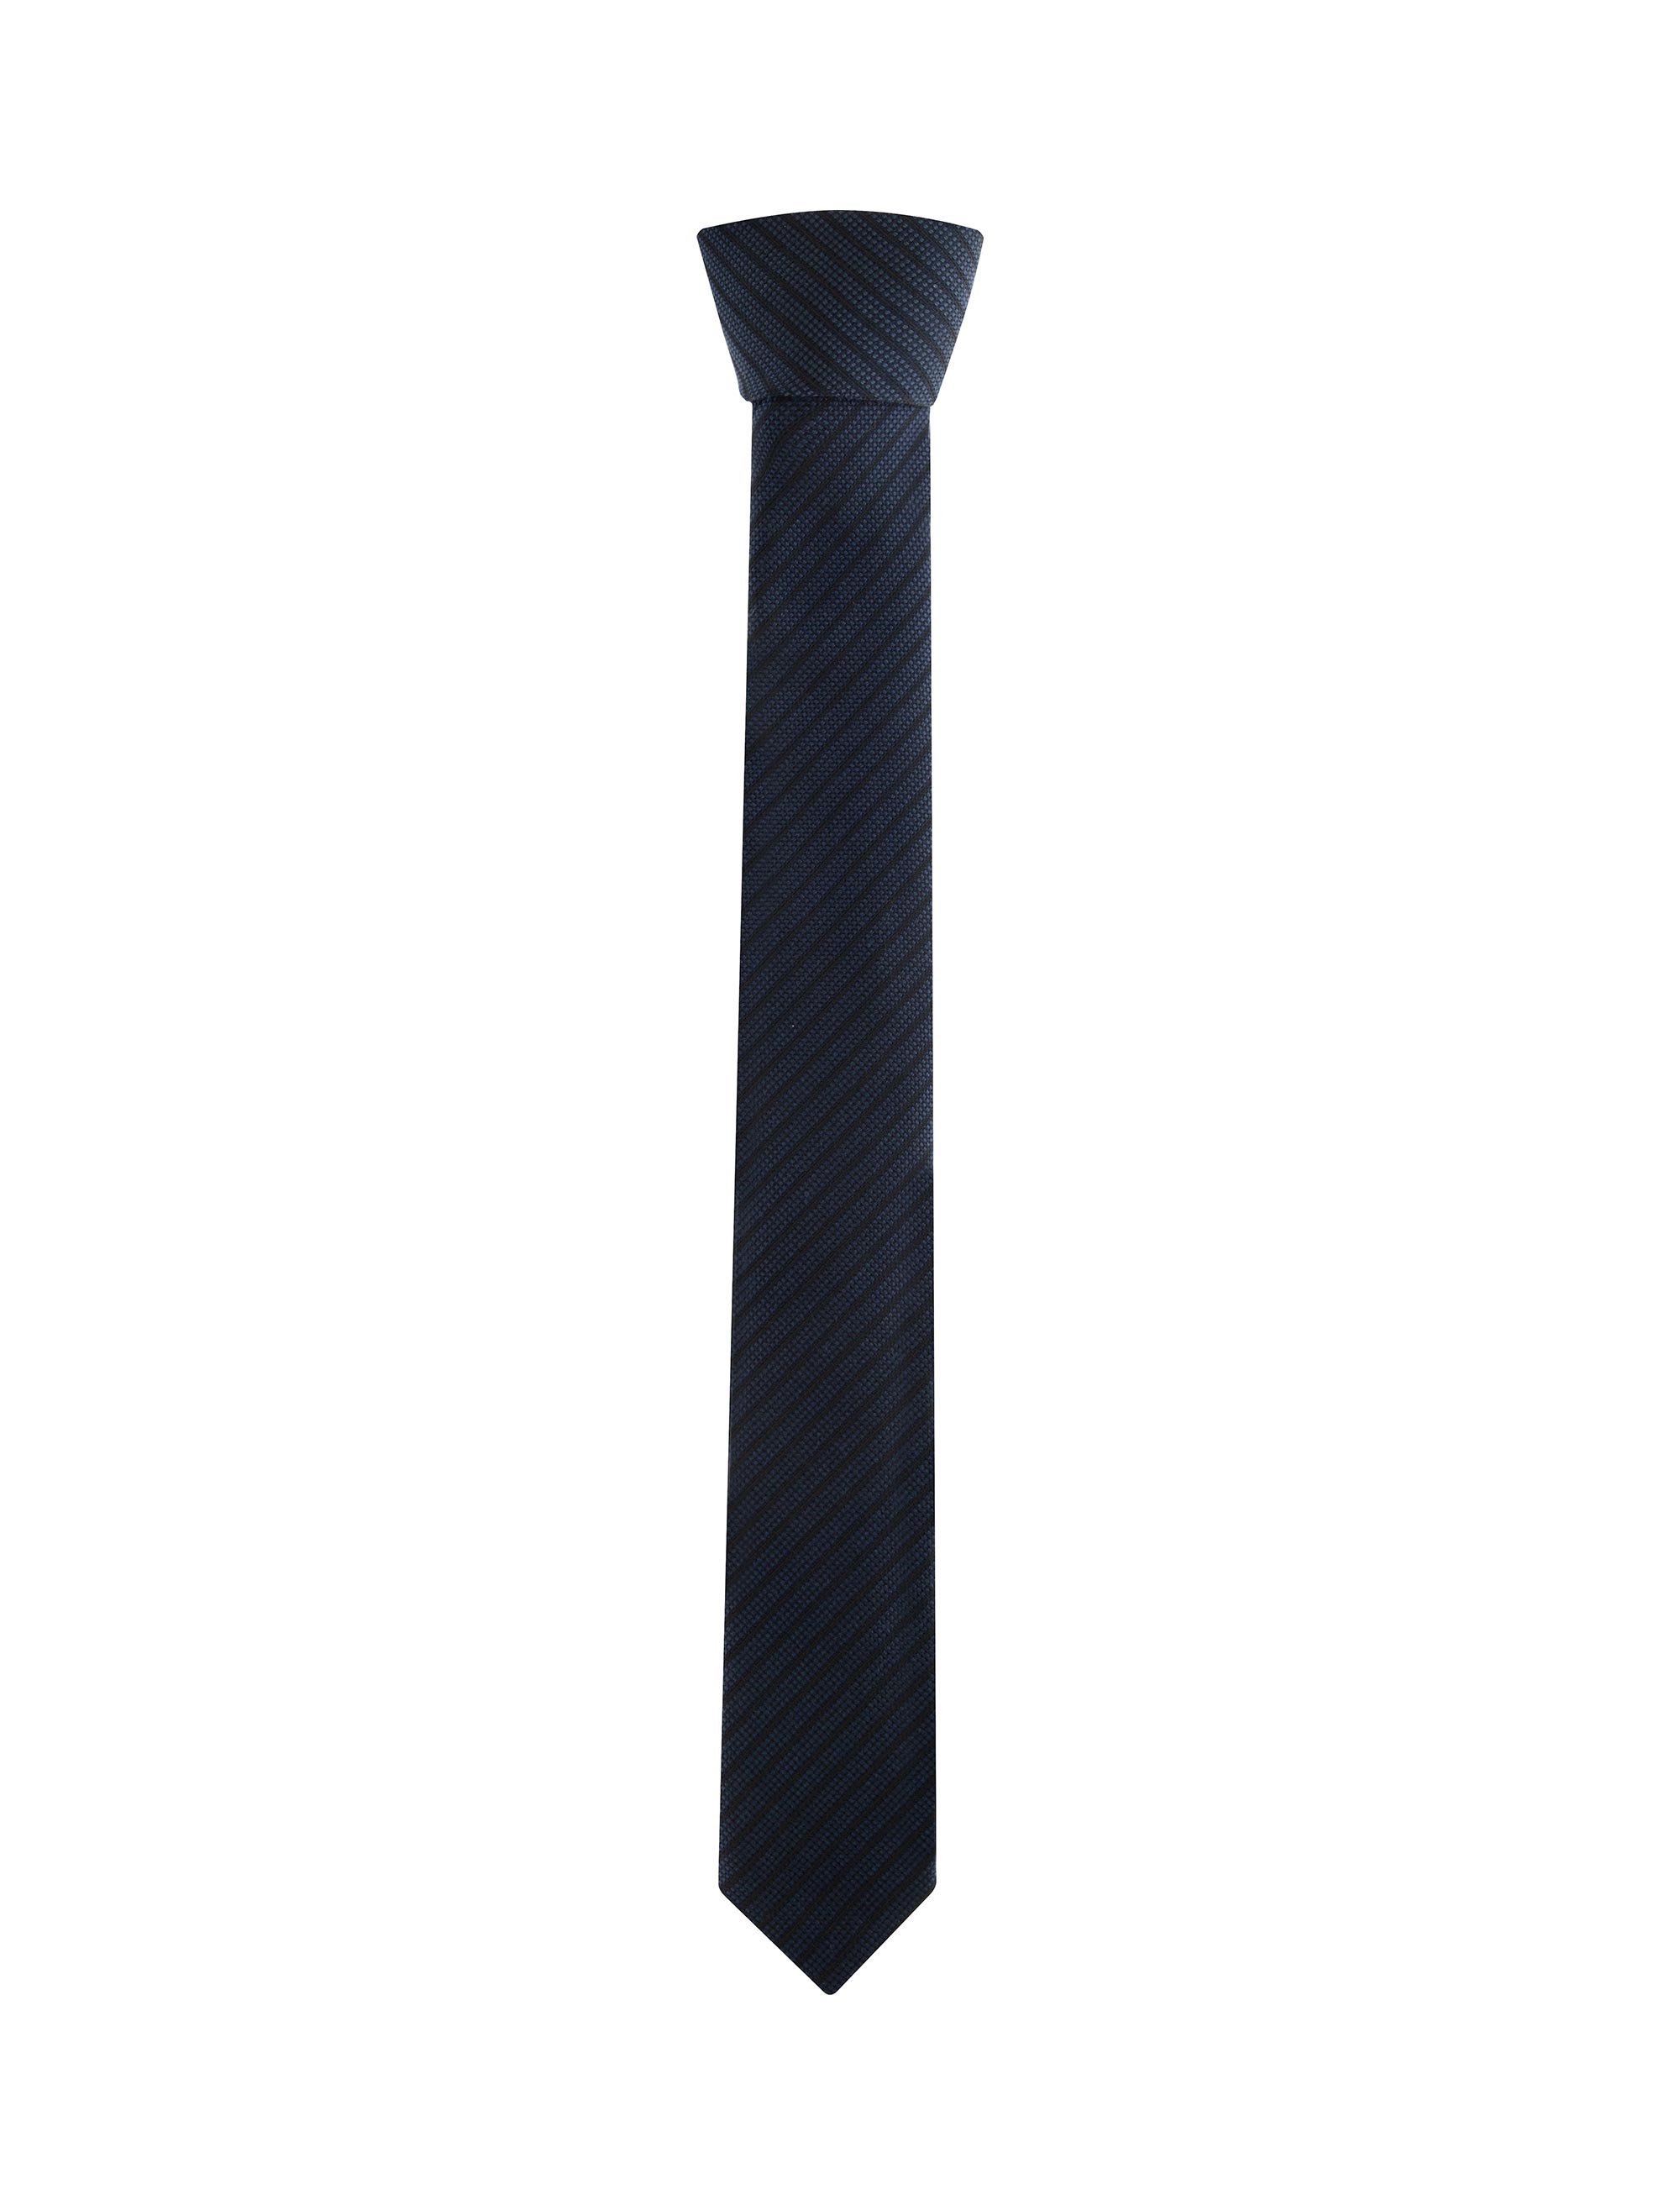 کراوات طرح دار مردانه - یوپیم - آبي - 1